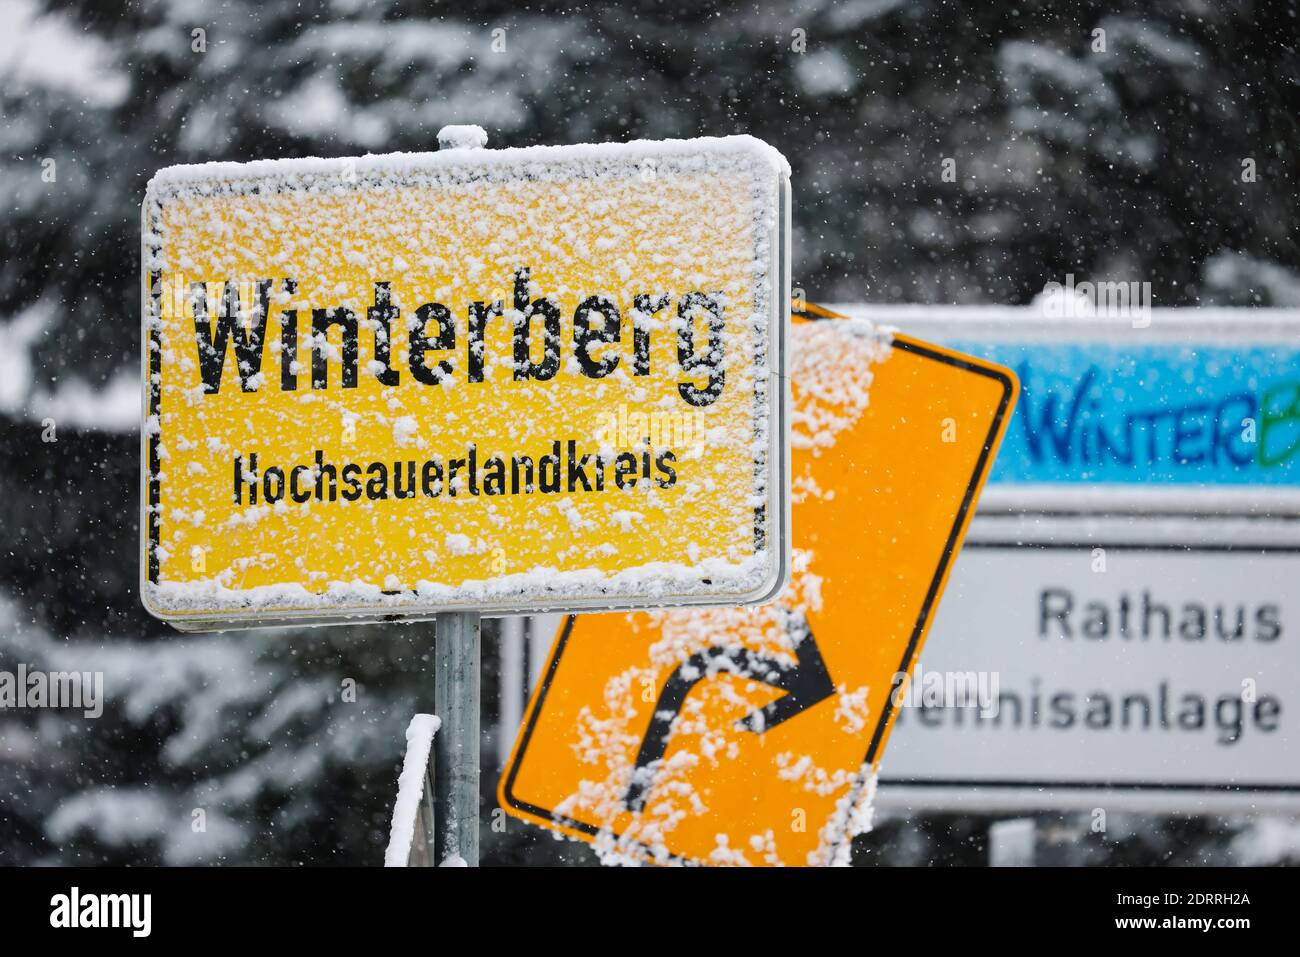 Winterberg, Sauerland, Nord Reno-Westfalia, Germania - neve coperta indicazione nome luogo Winterberg, non sport invernali a Winterberg in tempi di corona cr Foto Stock